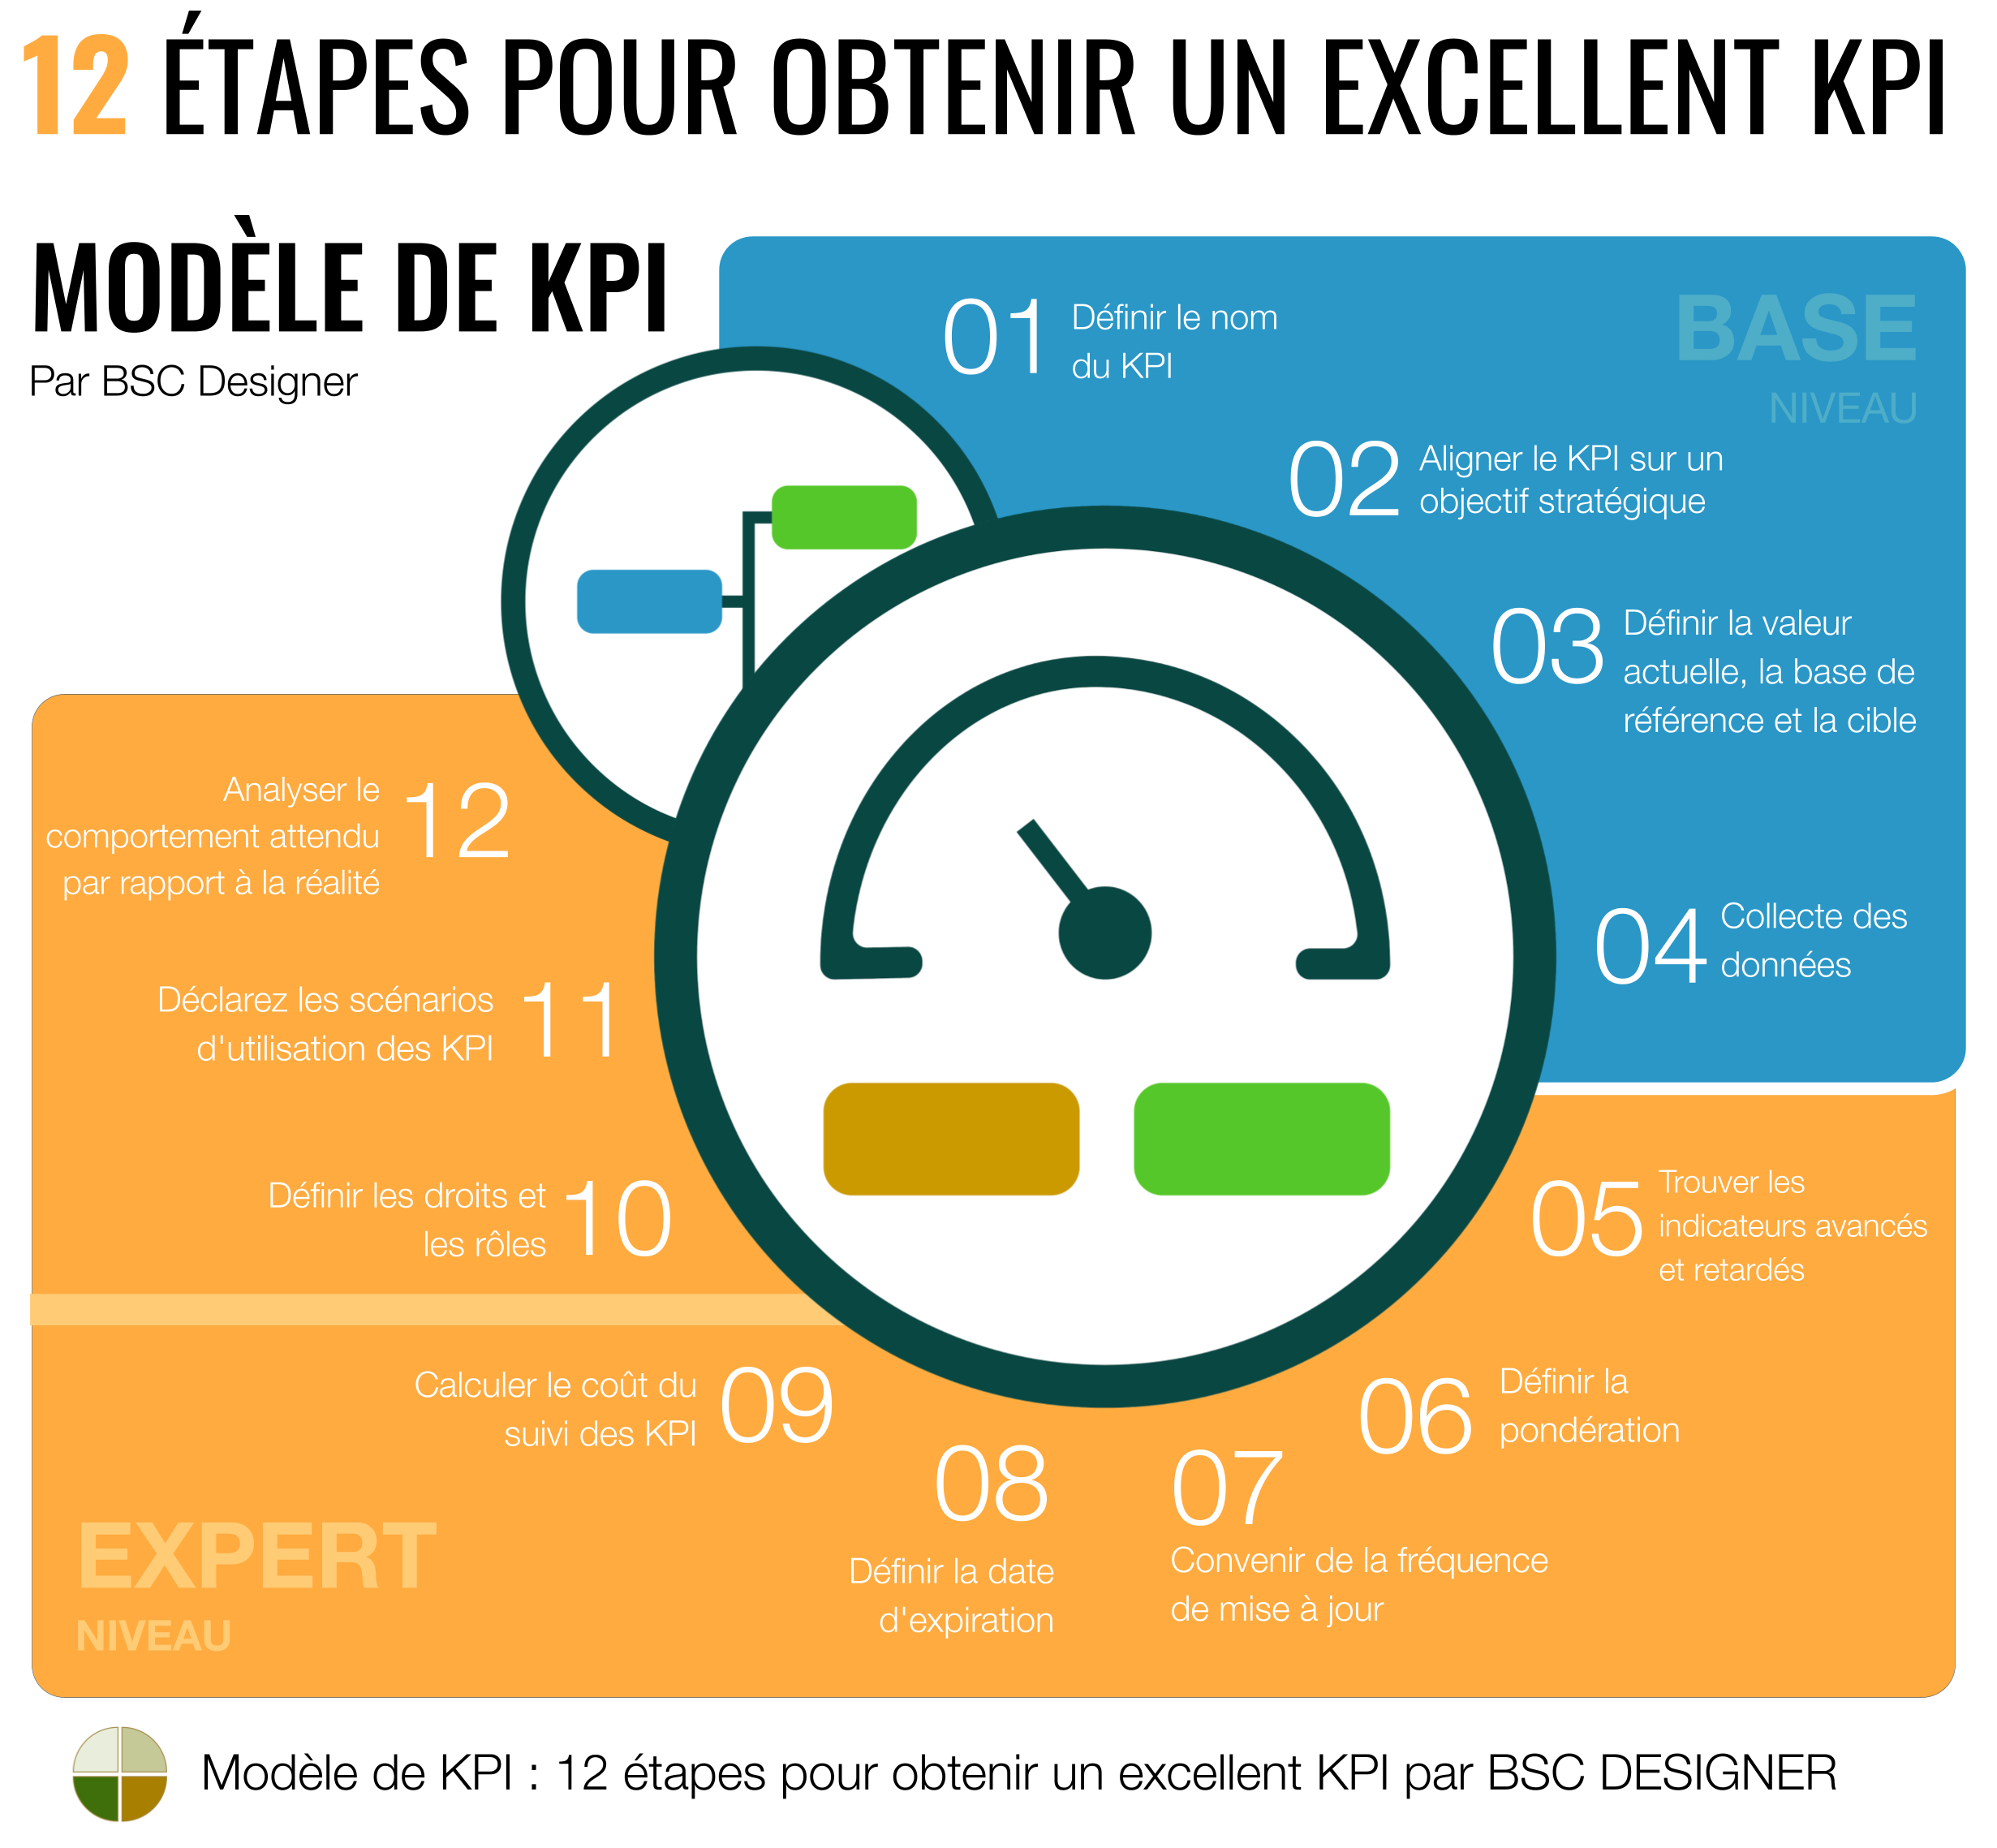  Modèle de KPI : 12 étapes pour un KPI parfait